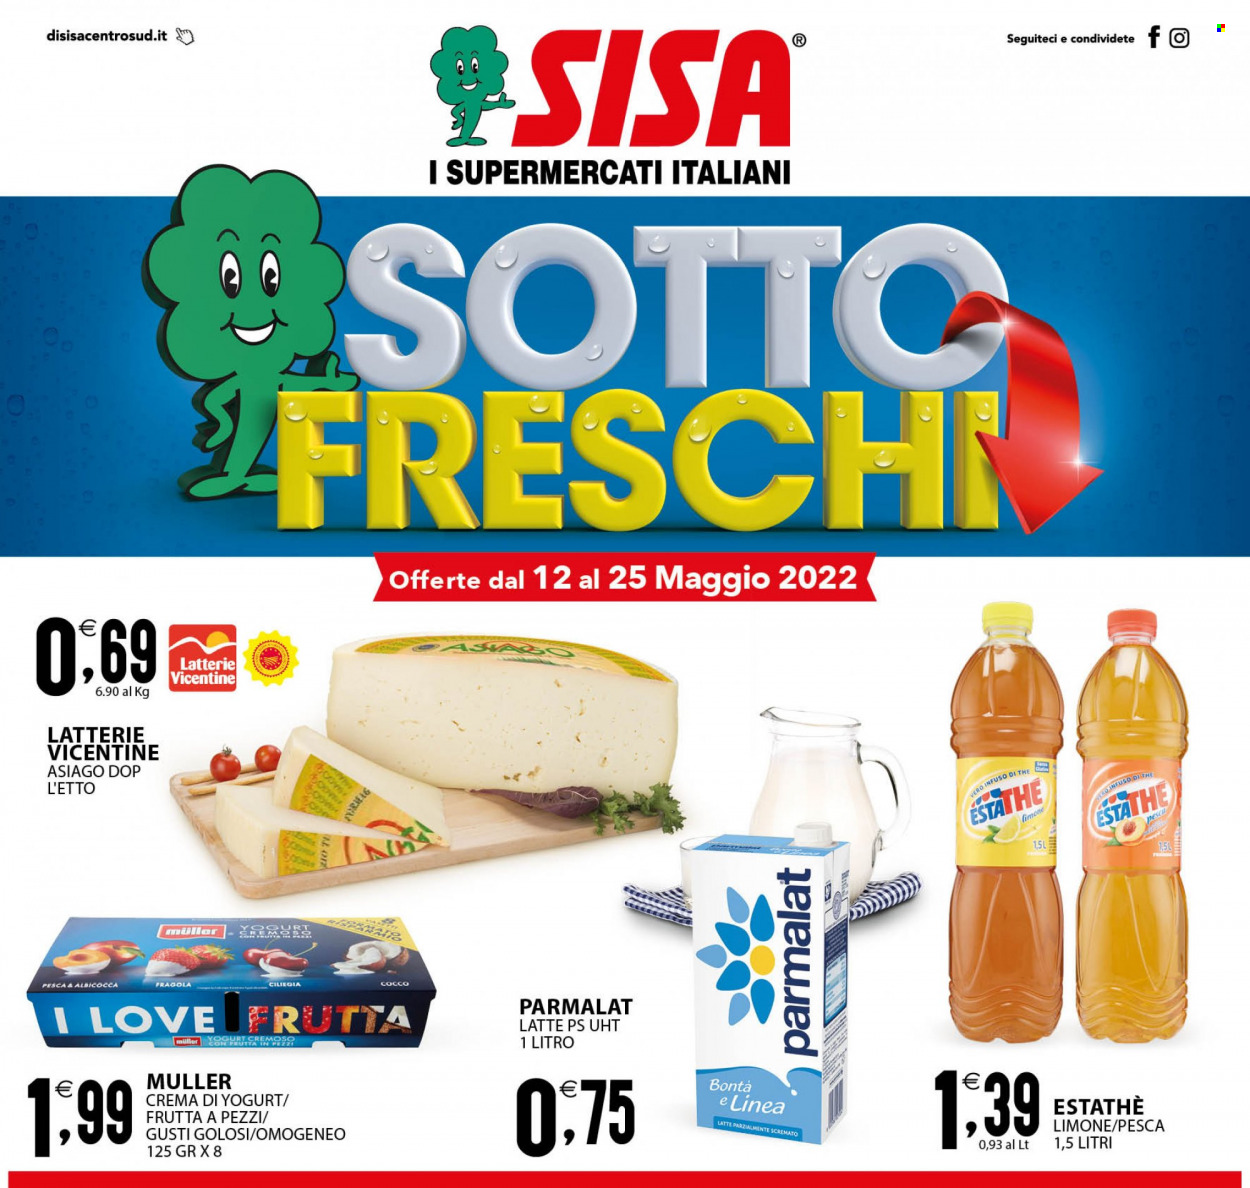 thumbnail - Volantino SISA - 12/5/2022 - 25/5/2022 - Prodotti in offerta - pesce, formaggio, Asiago, Parmalat, crema di yogurt, Müller, latte, Estathé, tè freddo. Pagina 1.